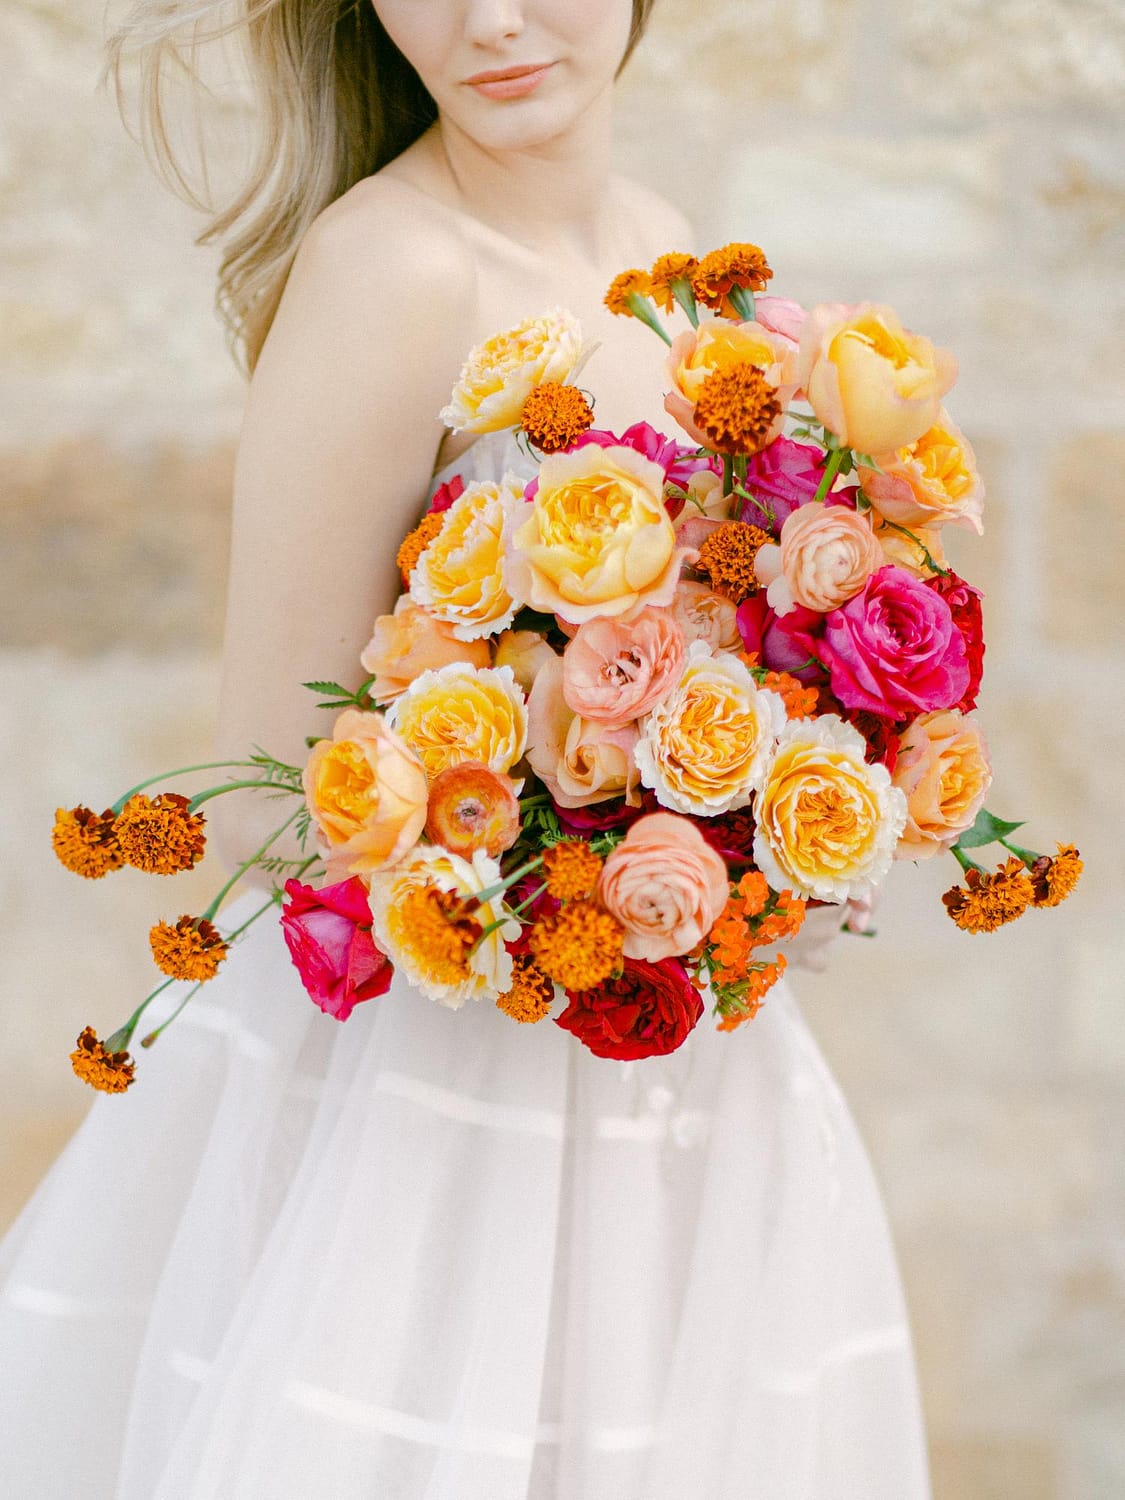 باقة الزفاف البرتقالية والزهرية